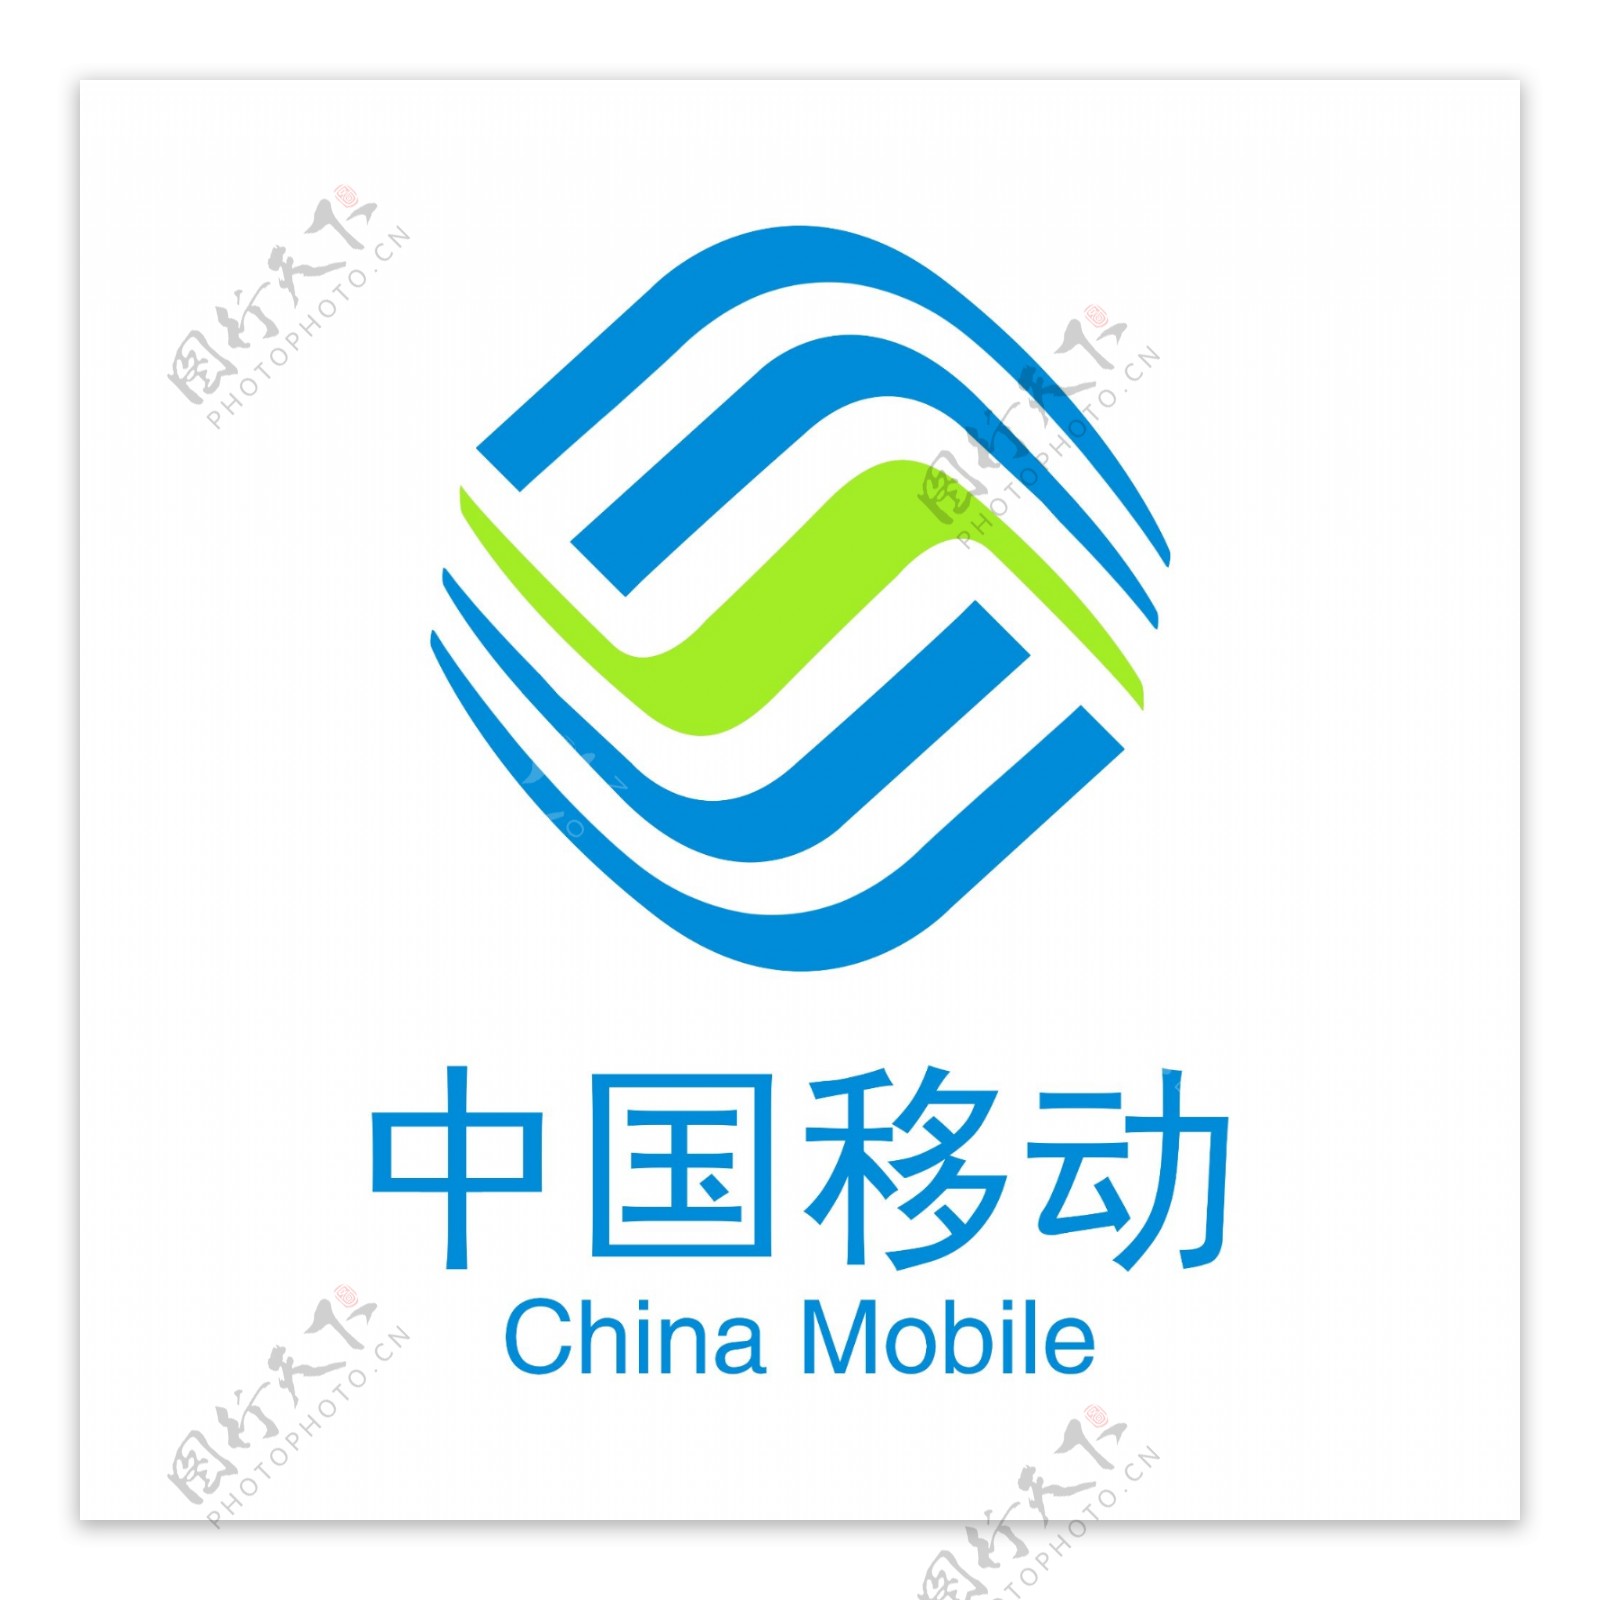 中国移动最新logo图片